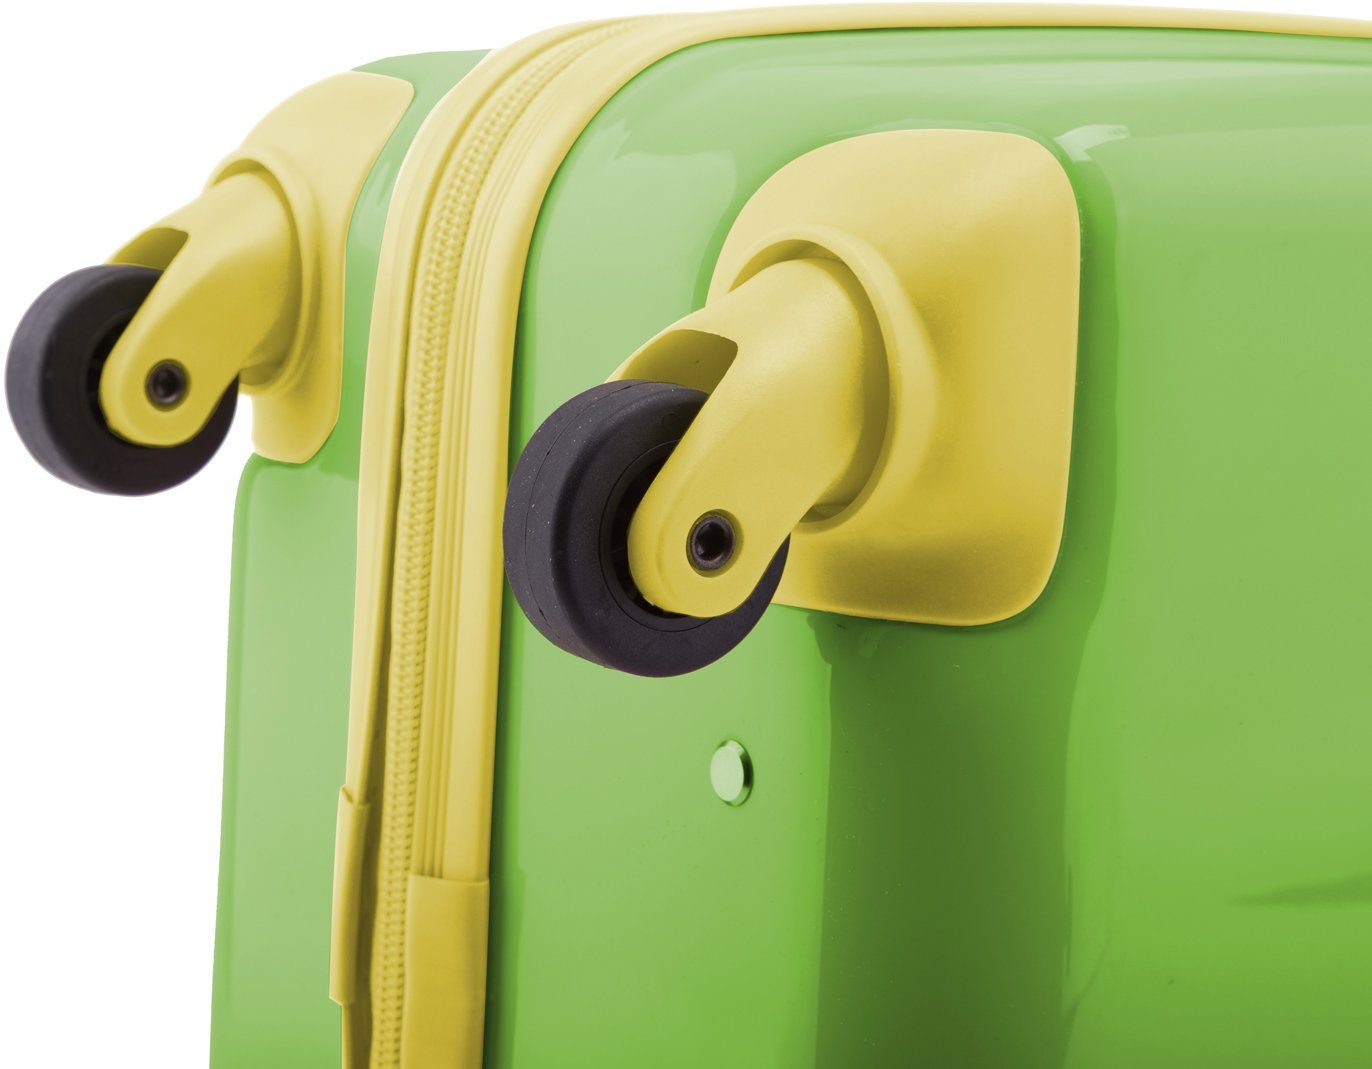 Hauptstadtkoffer Kinderkoffer For Apfelgrün/Sterne Kids, Sterne, Sterne-Stickern wasserbeständigen, mit 4 Rollen, reflektierenden